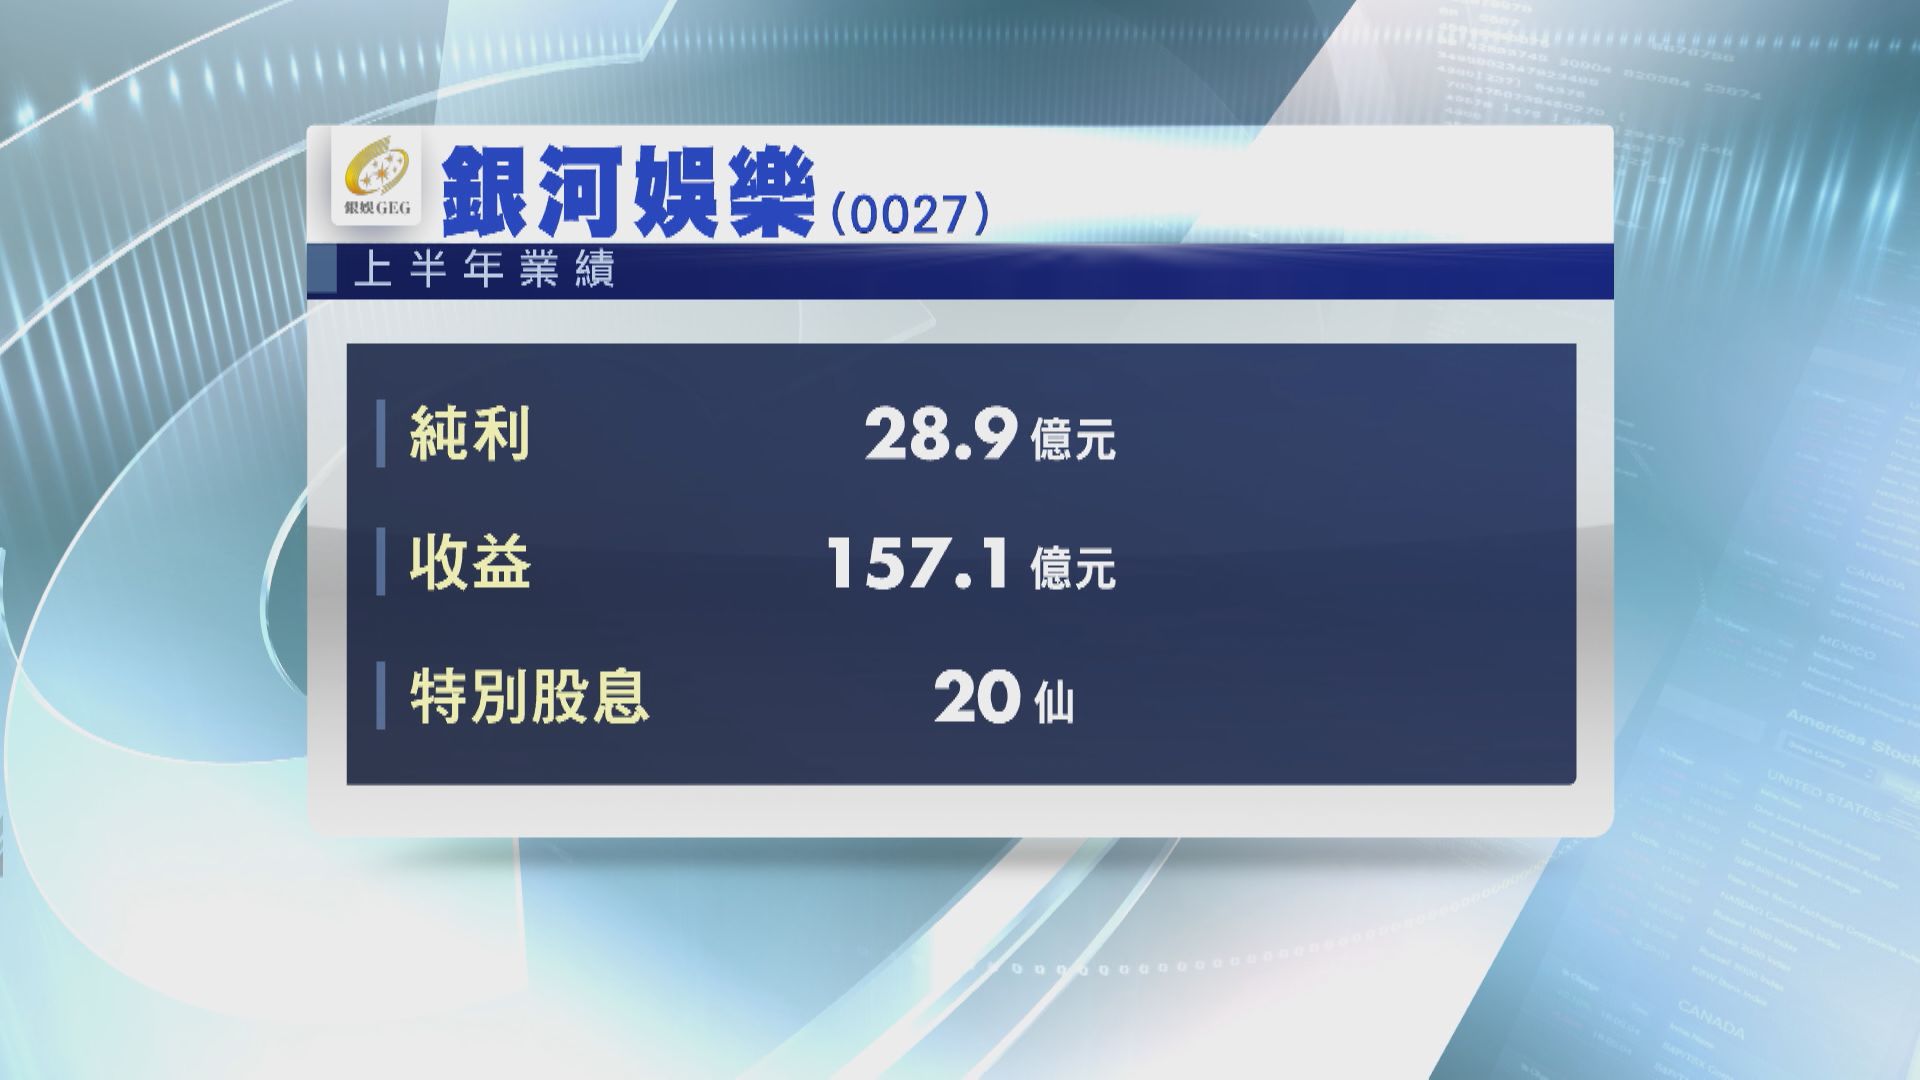 【藍籌業績】銀娛上半年轉賺28.9億 派特息20仙